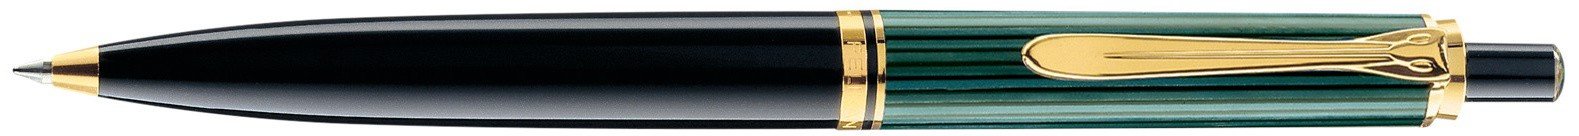 Ручка шариковая Pelikan Souveraen K 400, черный/зеленый, подарочная коробка